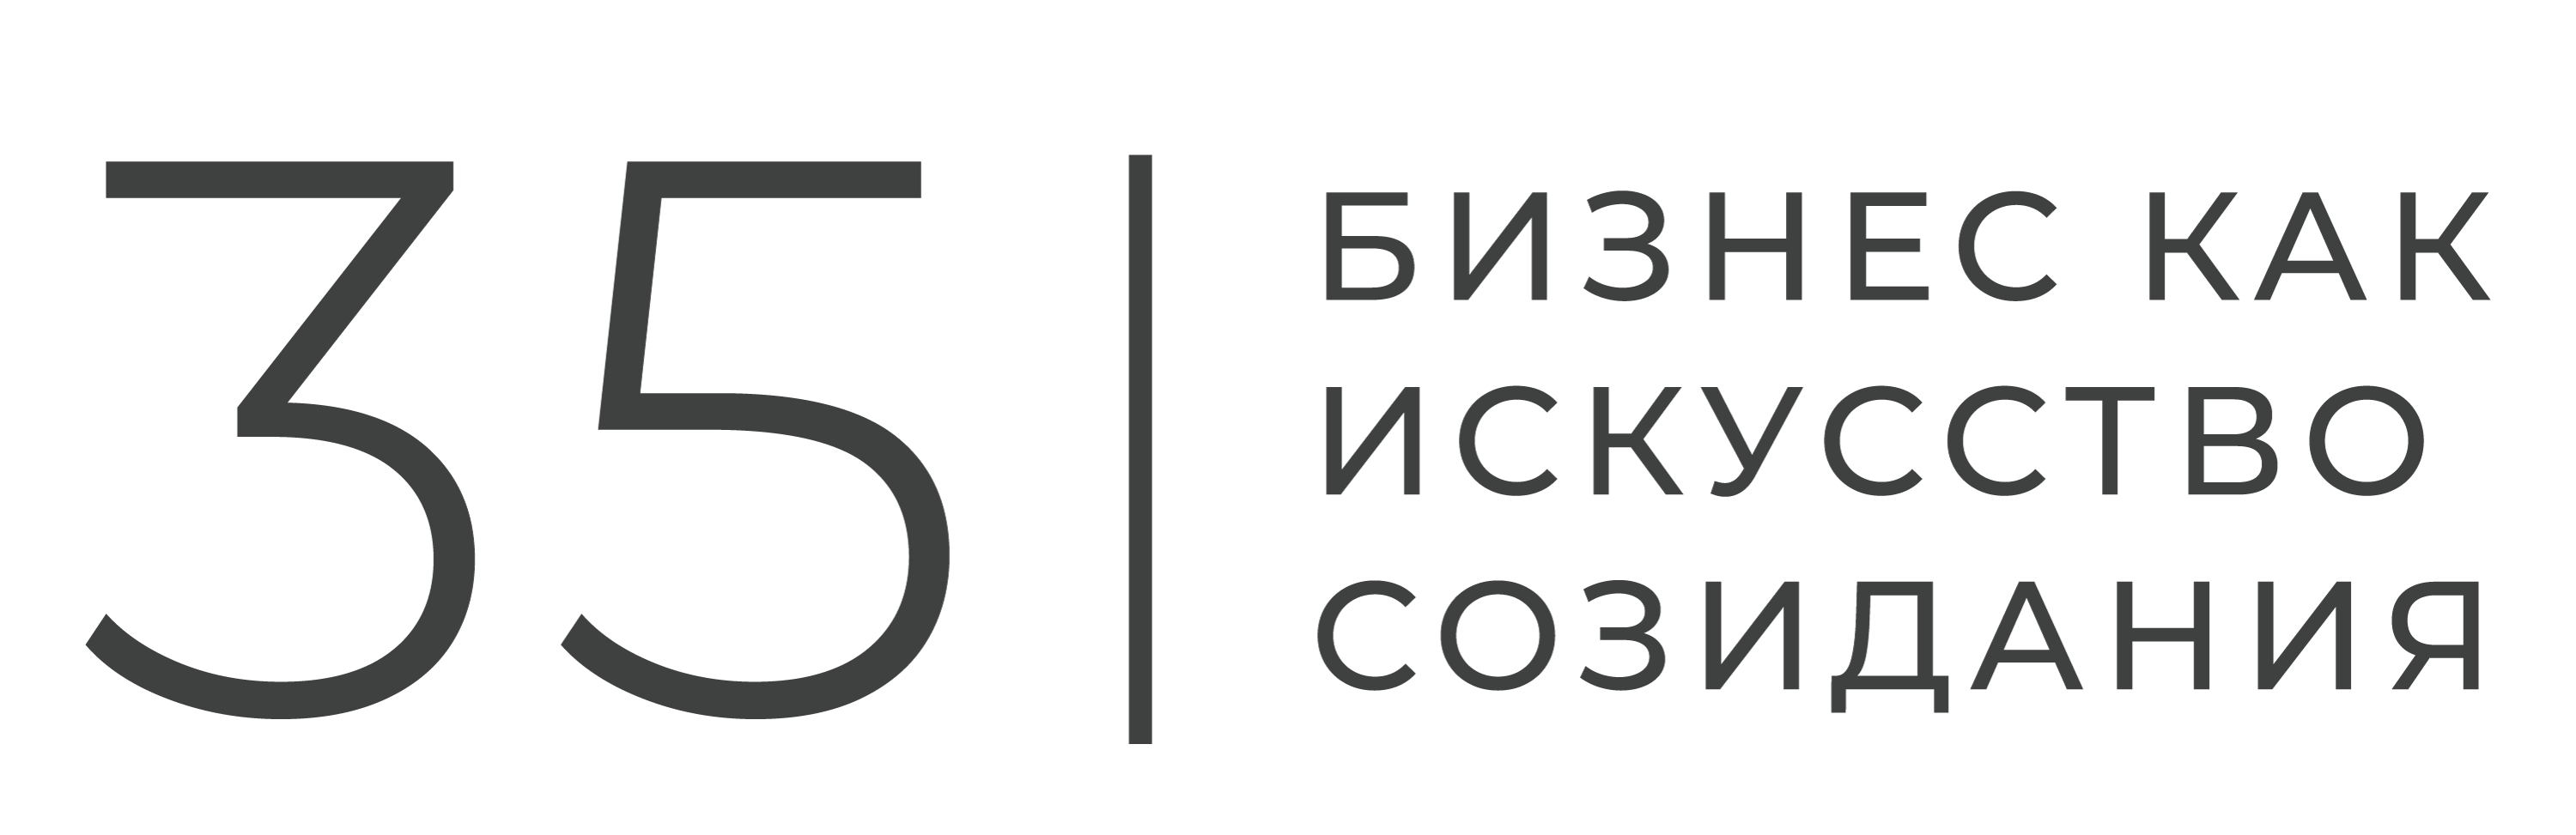 Логотип юбилейной концепции 35-летия ГК "Новард"